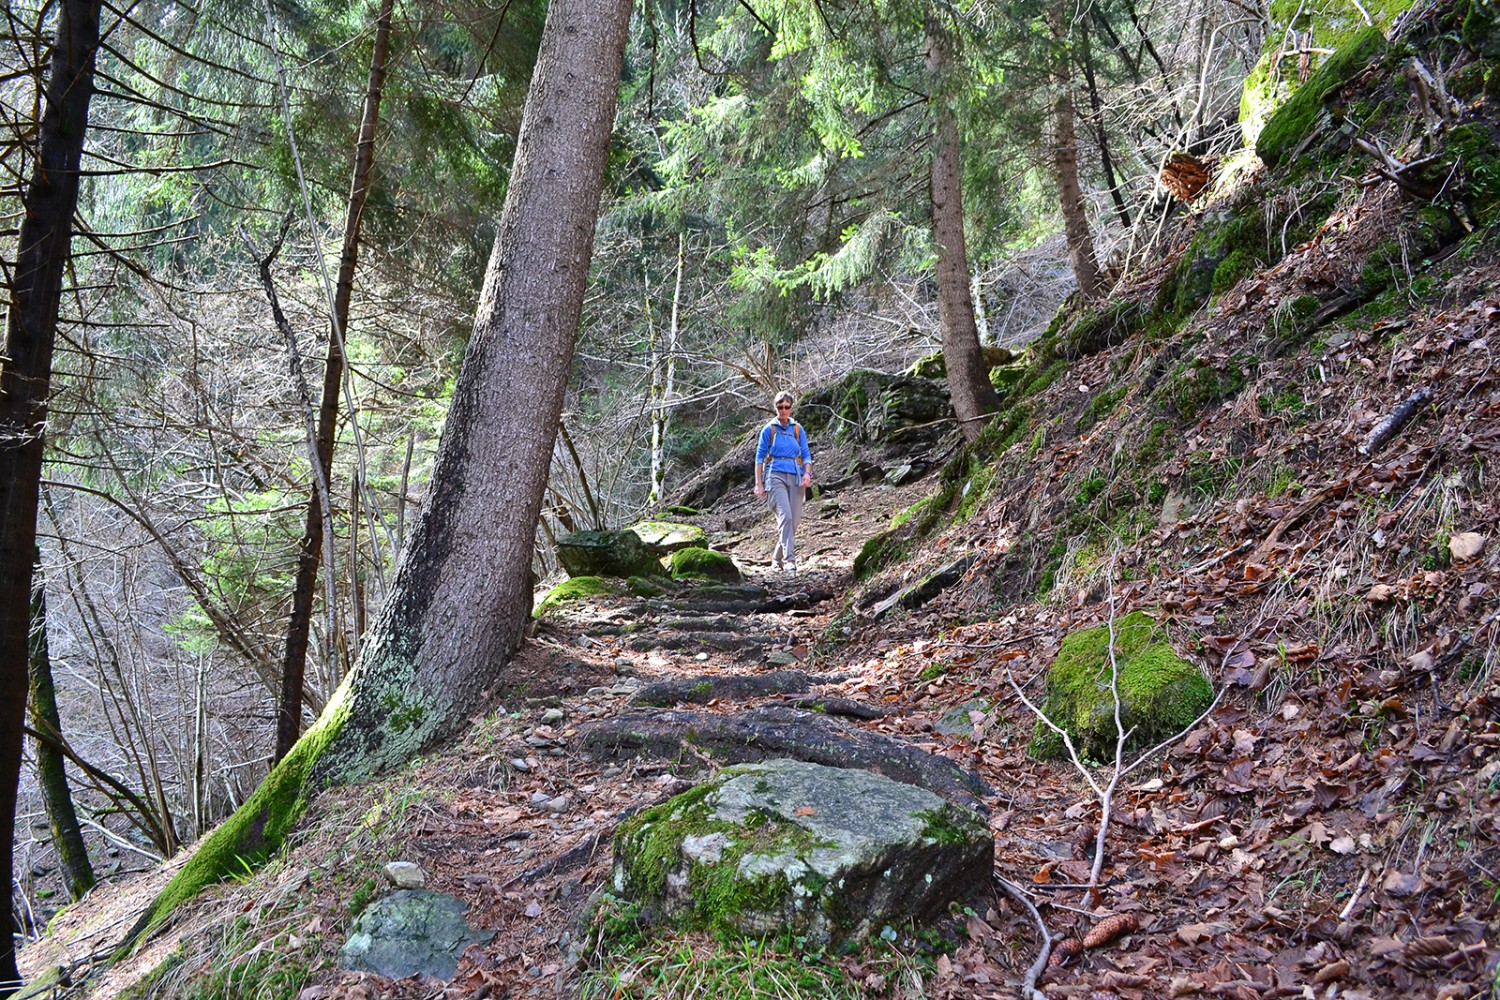 La montée vers Piana Selva passe par une forêt, un passage ombragé bienvenu lorsqu’il fait chaud.